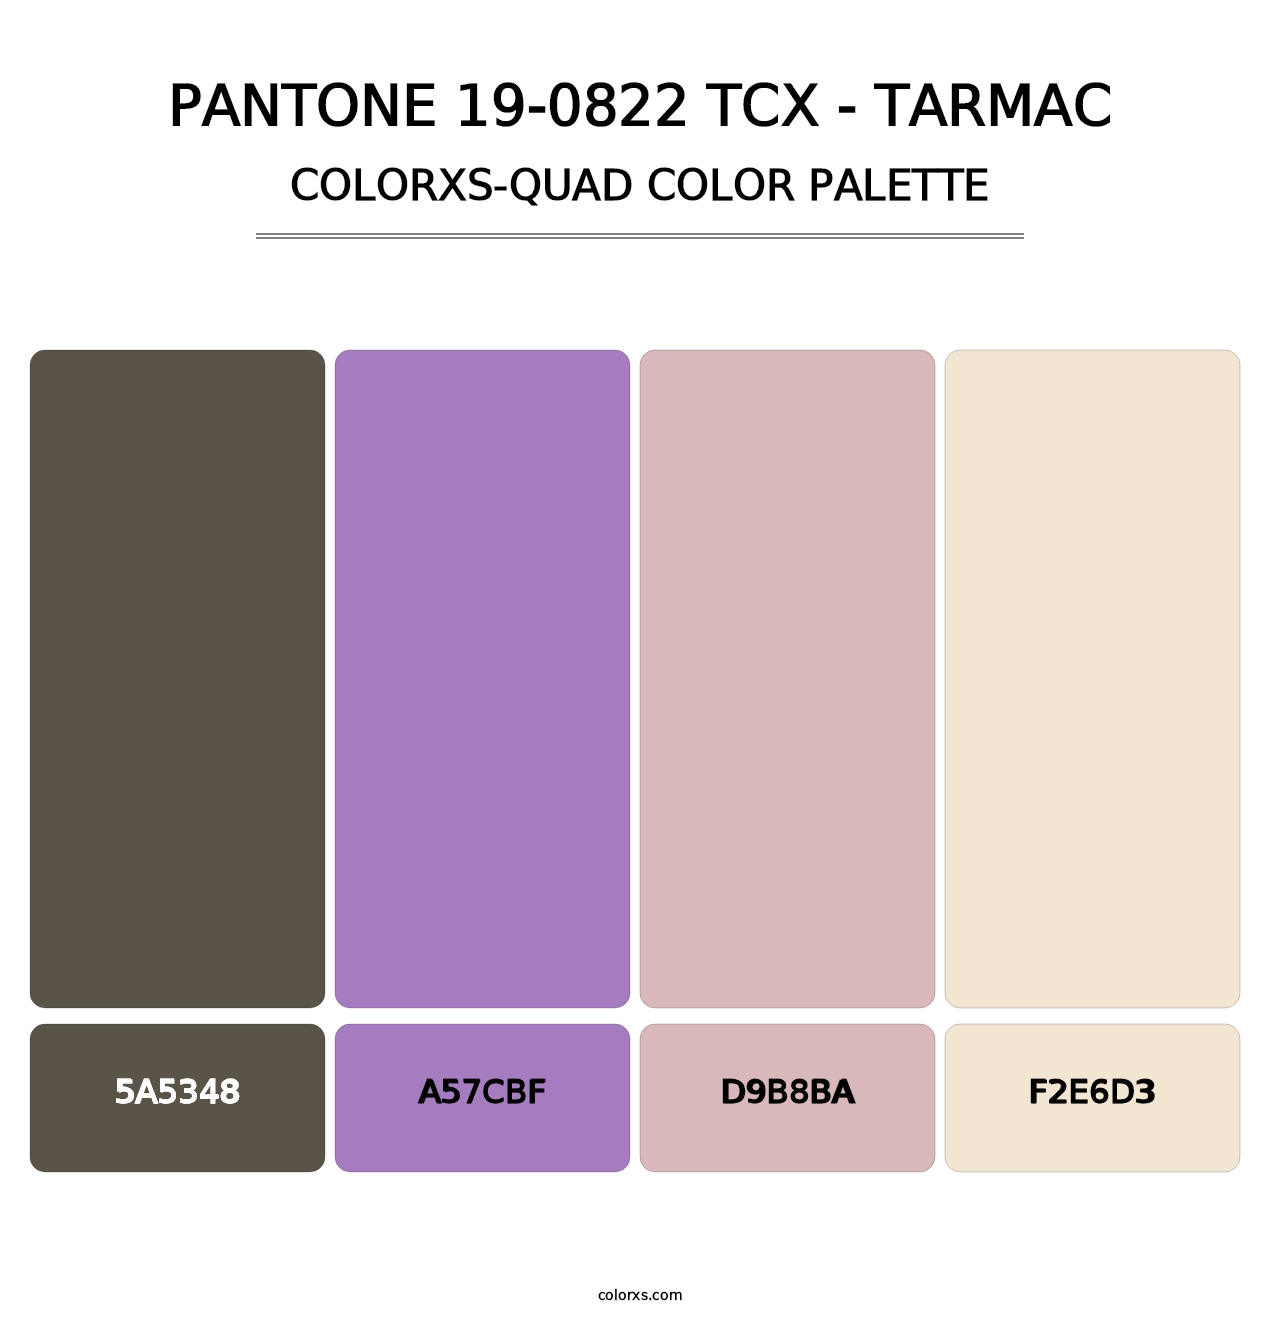 PANTONE 19-0822 TCX - Tarmac - Colorxs Quad Palette